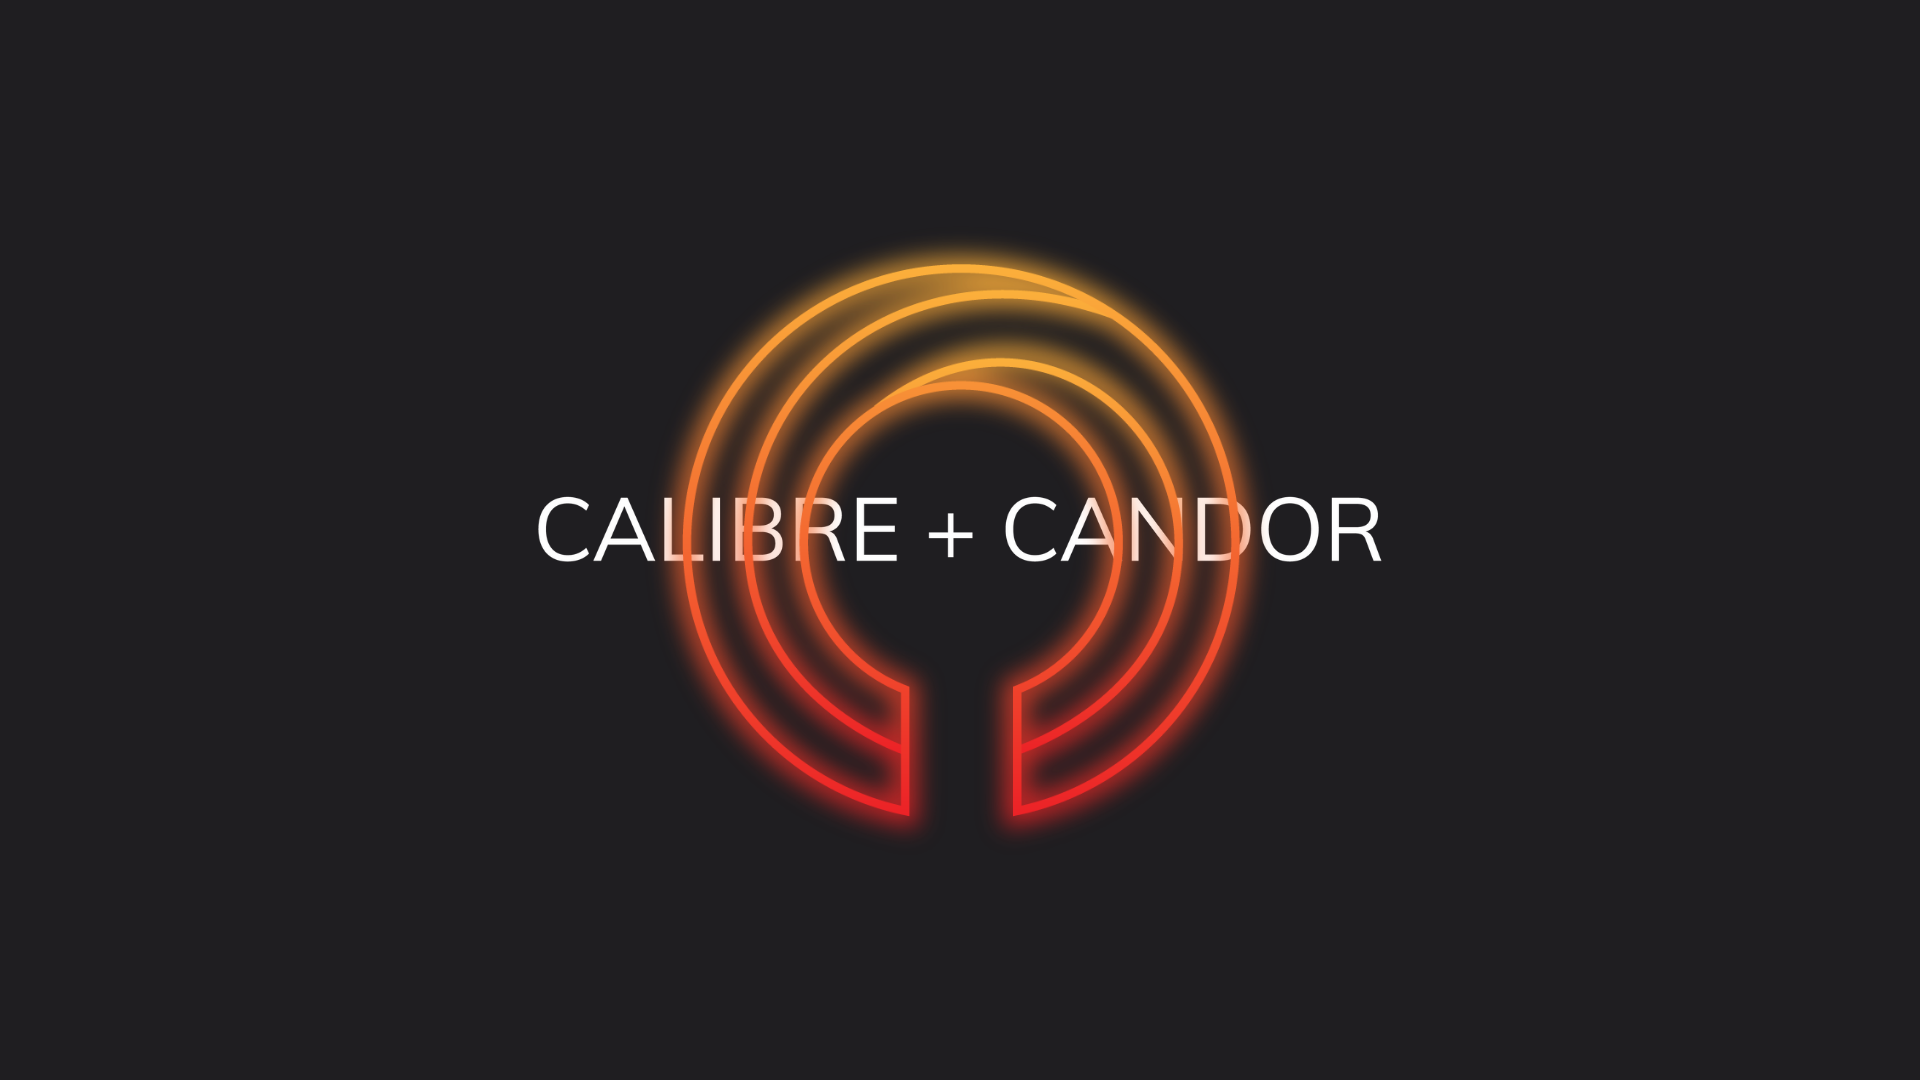 Calibre + Candor Creative video